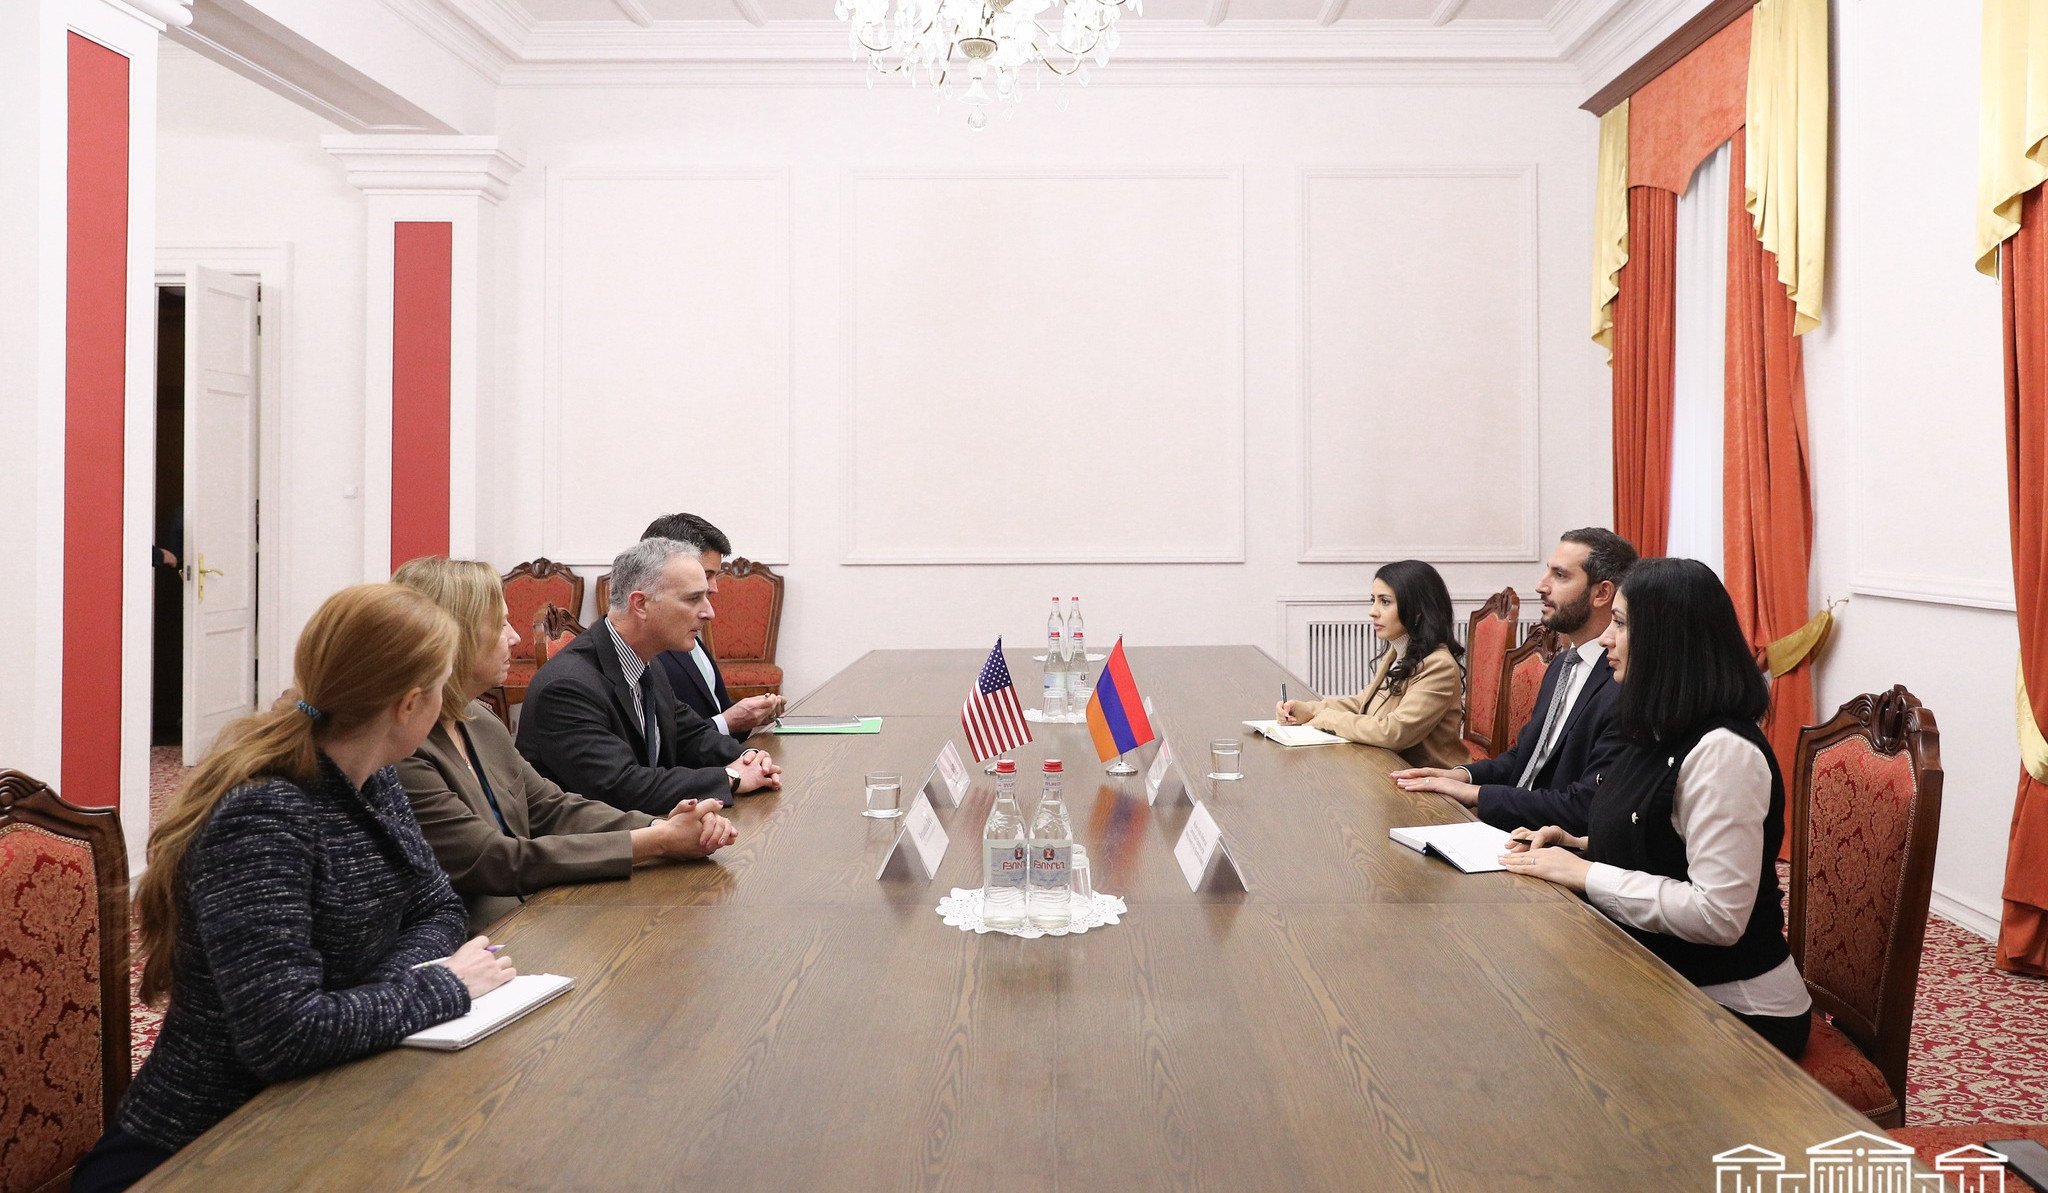 Ռուբեն Ռուբինյանն ու Լուիս Բոնոն անդրադարձել են Հայաստանի և Ադրբեջանի միջև խաղաղության գործընթացին